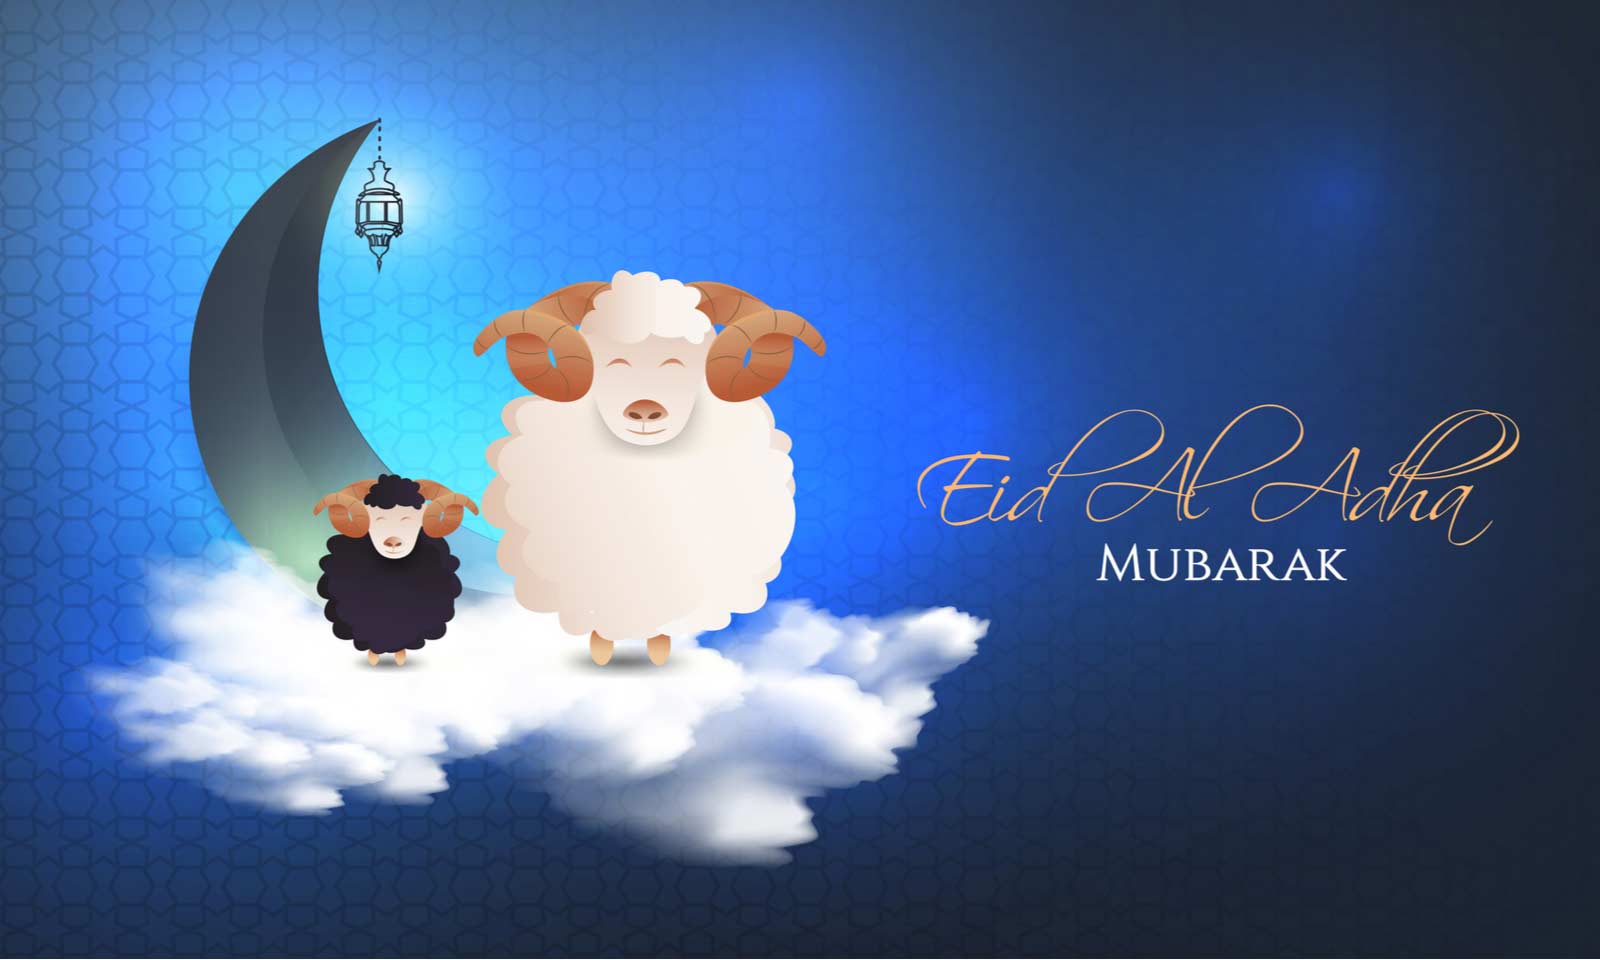 World Celebrates `Eid Al-Adha on August 11